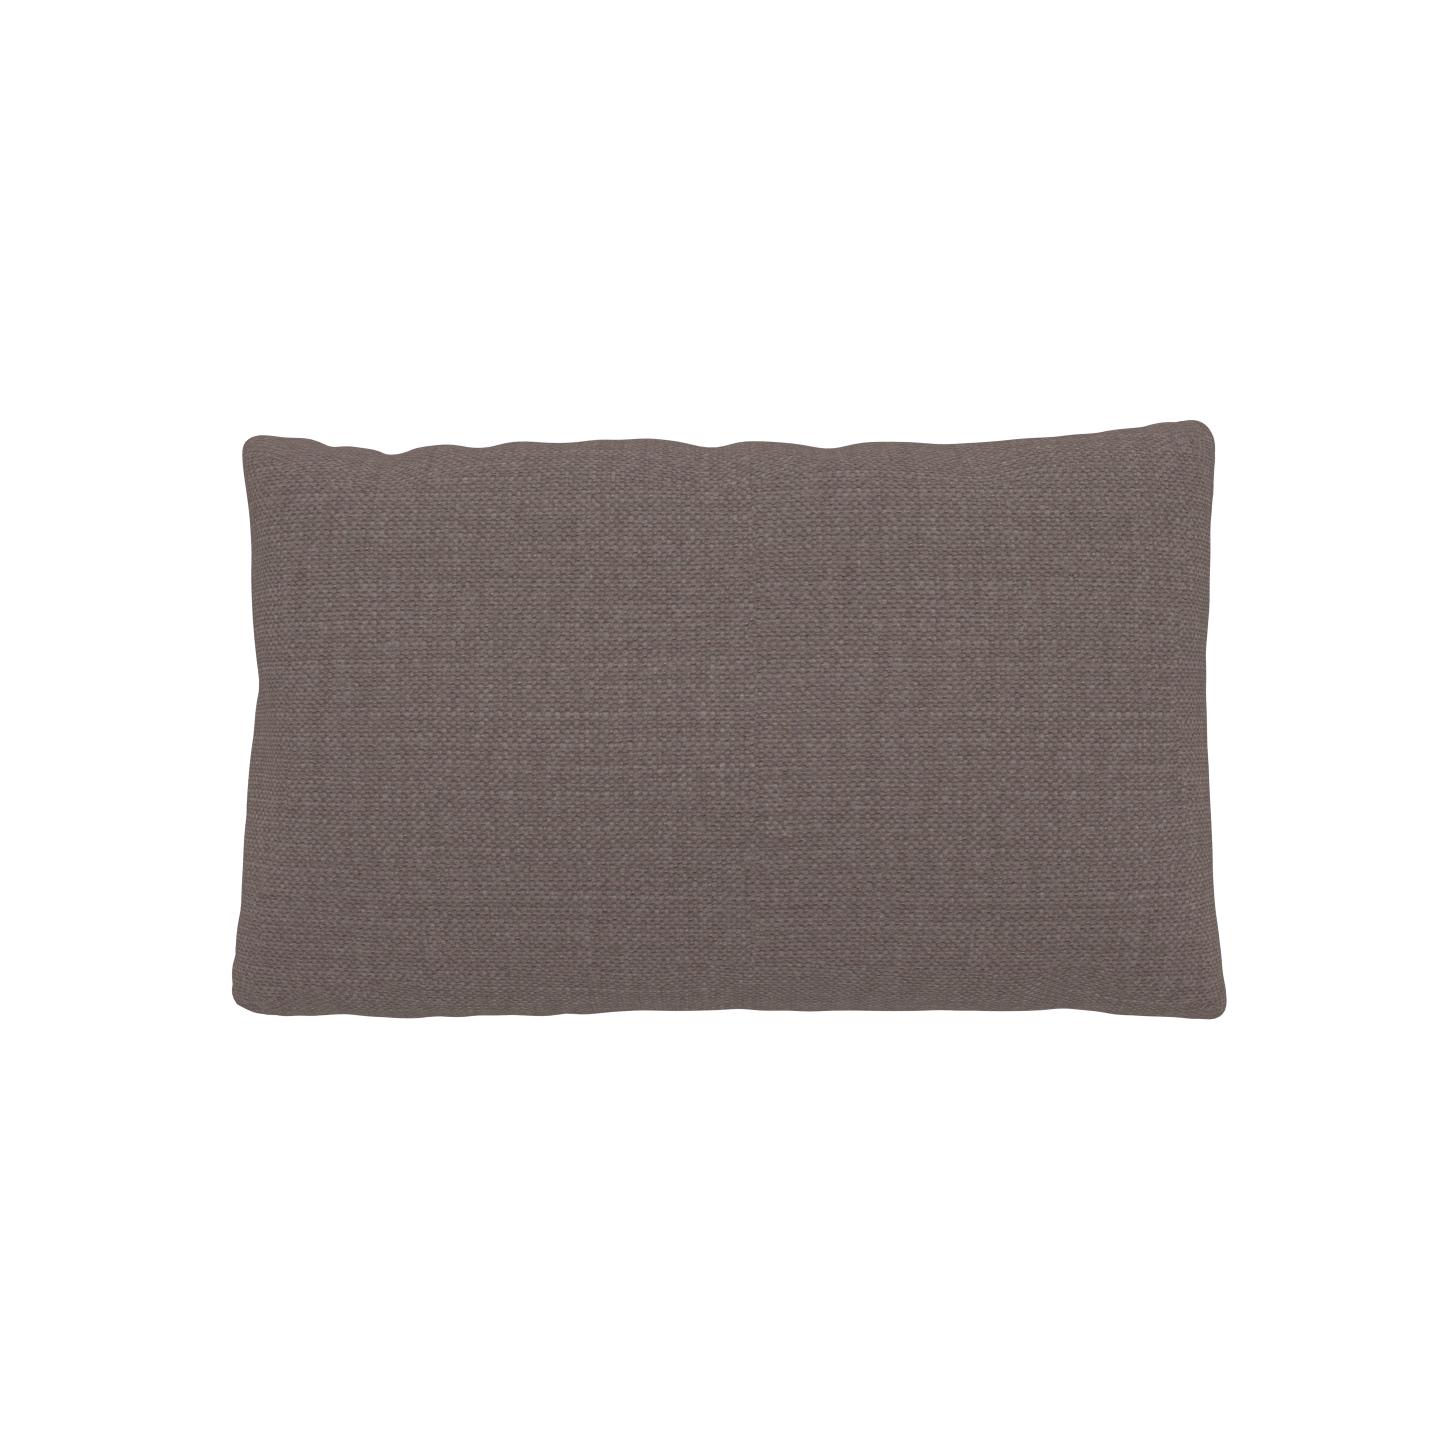 MYCS Coussin Taupe Gris - 30x50 cm - Housse en Textile tissé. Coussin de canapé moelleux